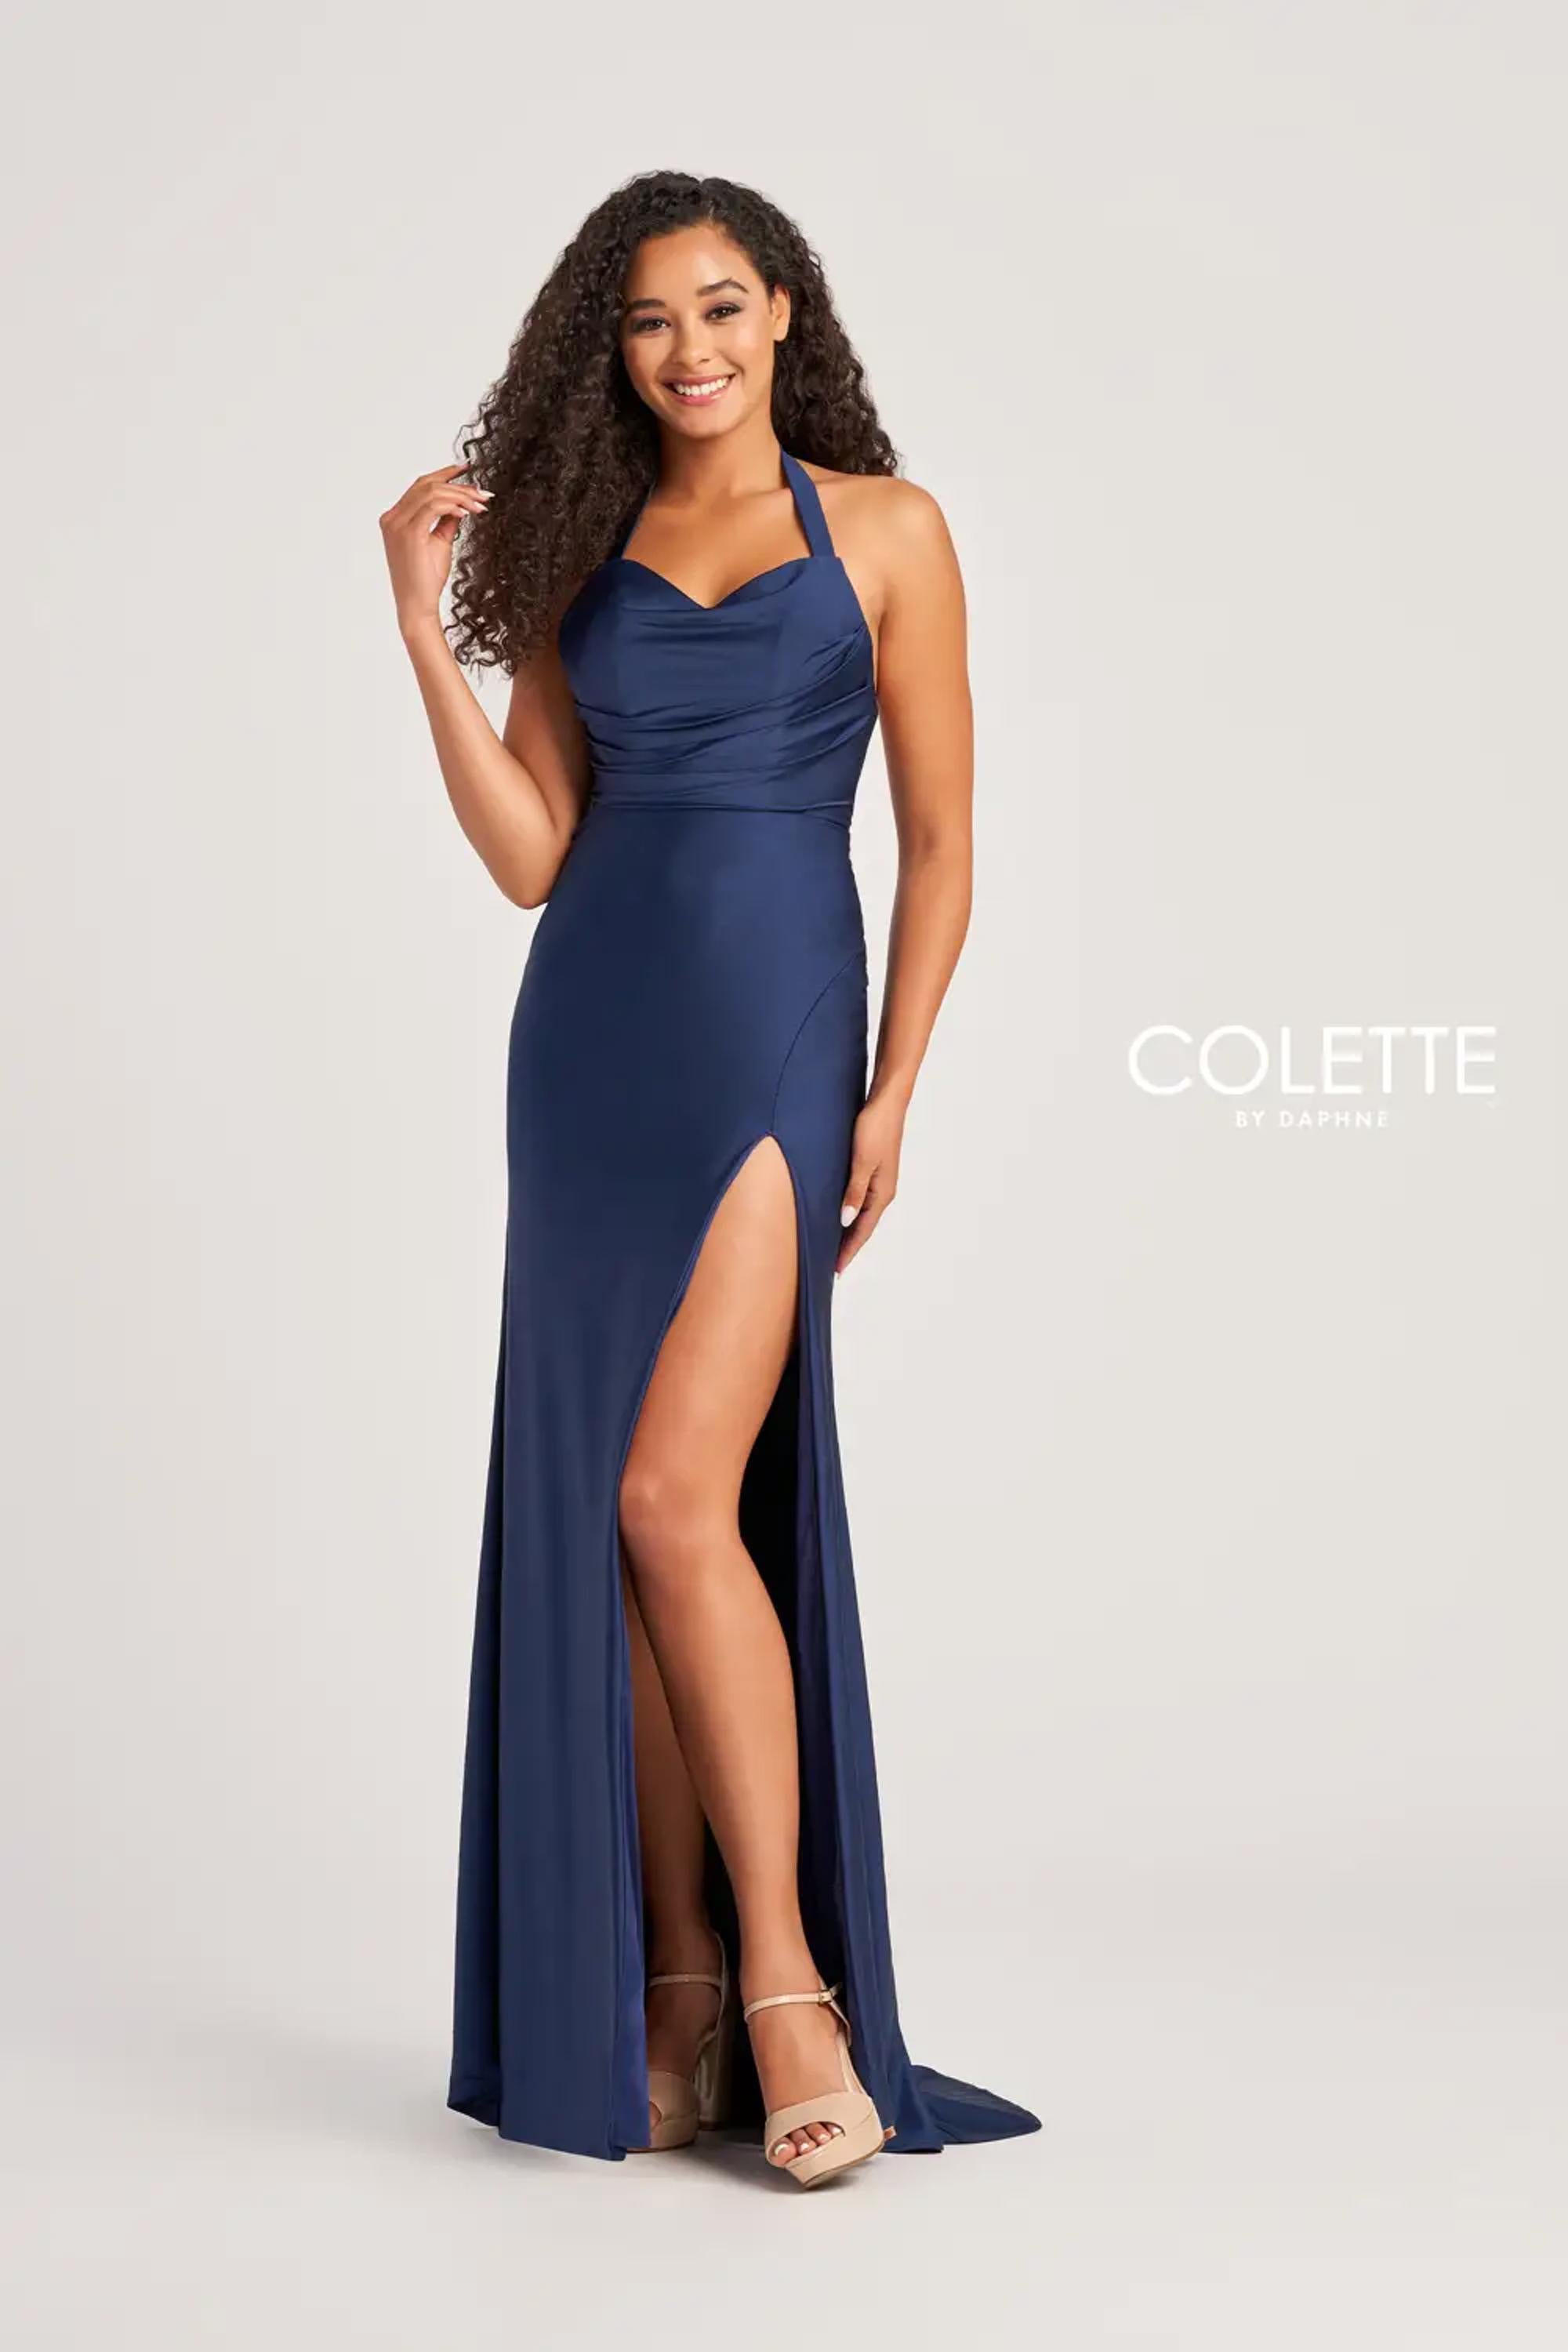 Colette CL5164